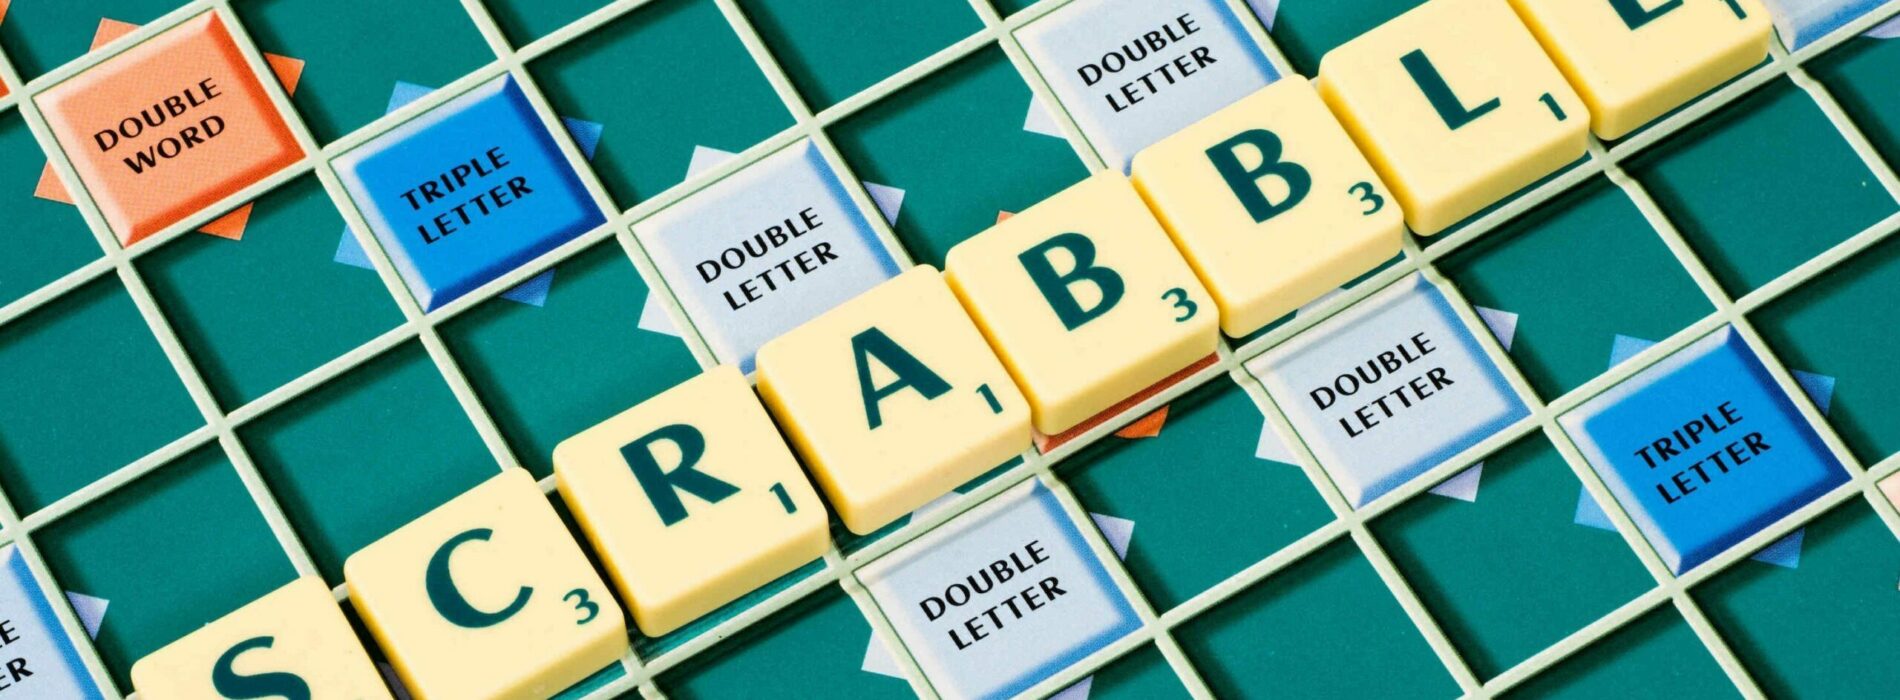 Scrabble – gra, która umili czas wolny